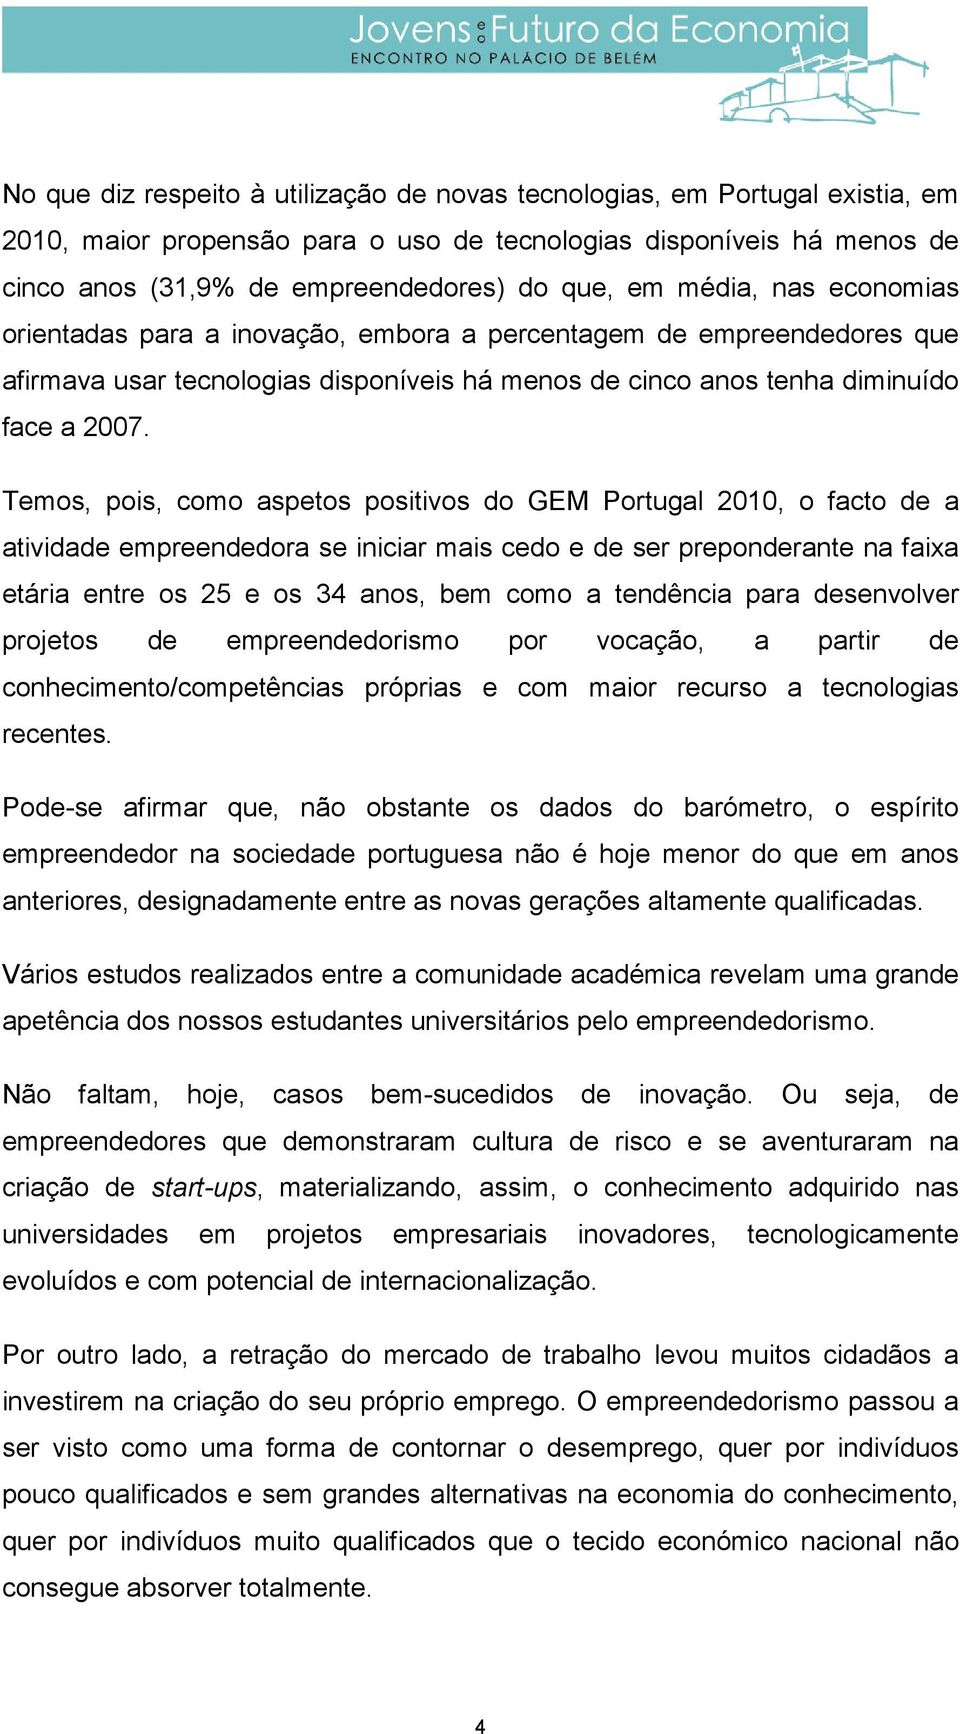 Temos, pois, como aspetos positivos do GEM Portugal 2010, o facto de a atividade empreendedora se iniciar mais cedo e de ser preponderante na faixa etária entre os 25 e os 34 anos, bem como a